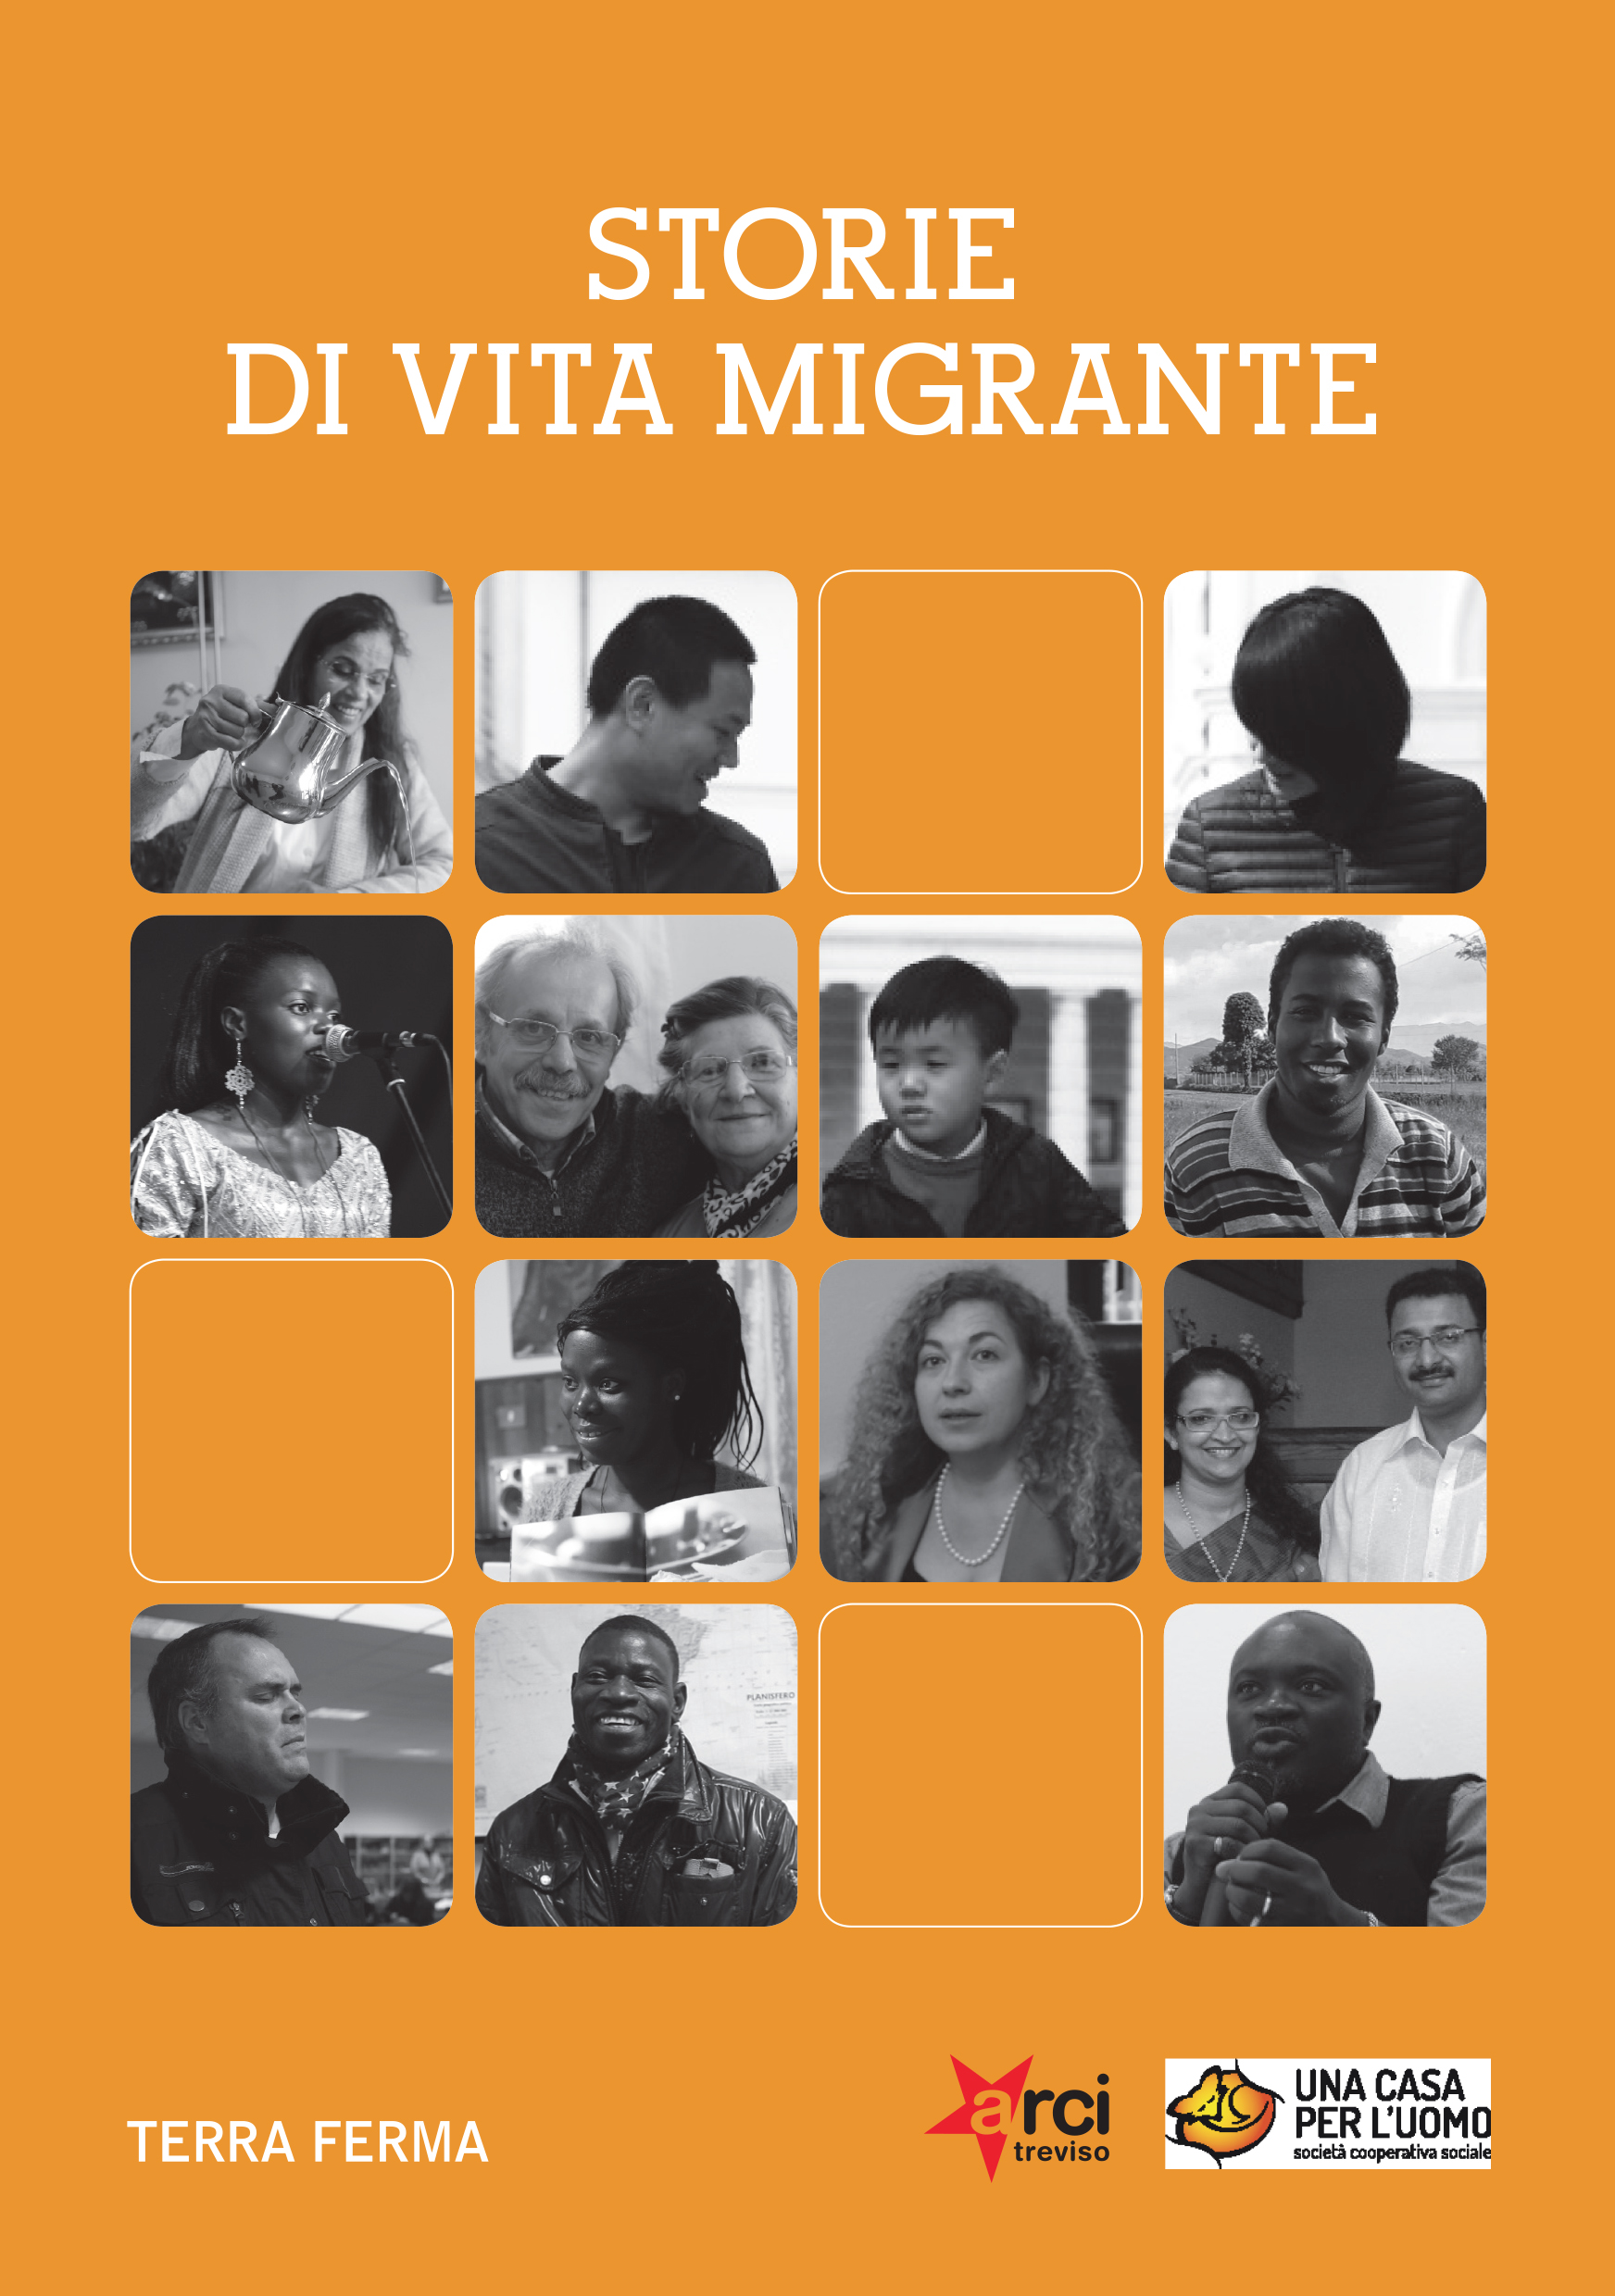 Storie_di_vita_migrante_ok